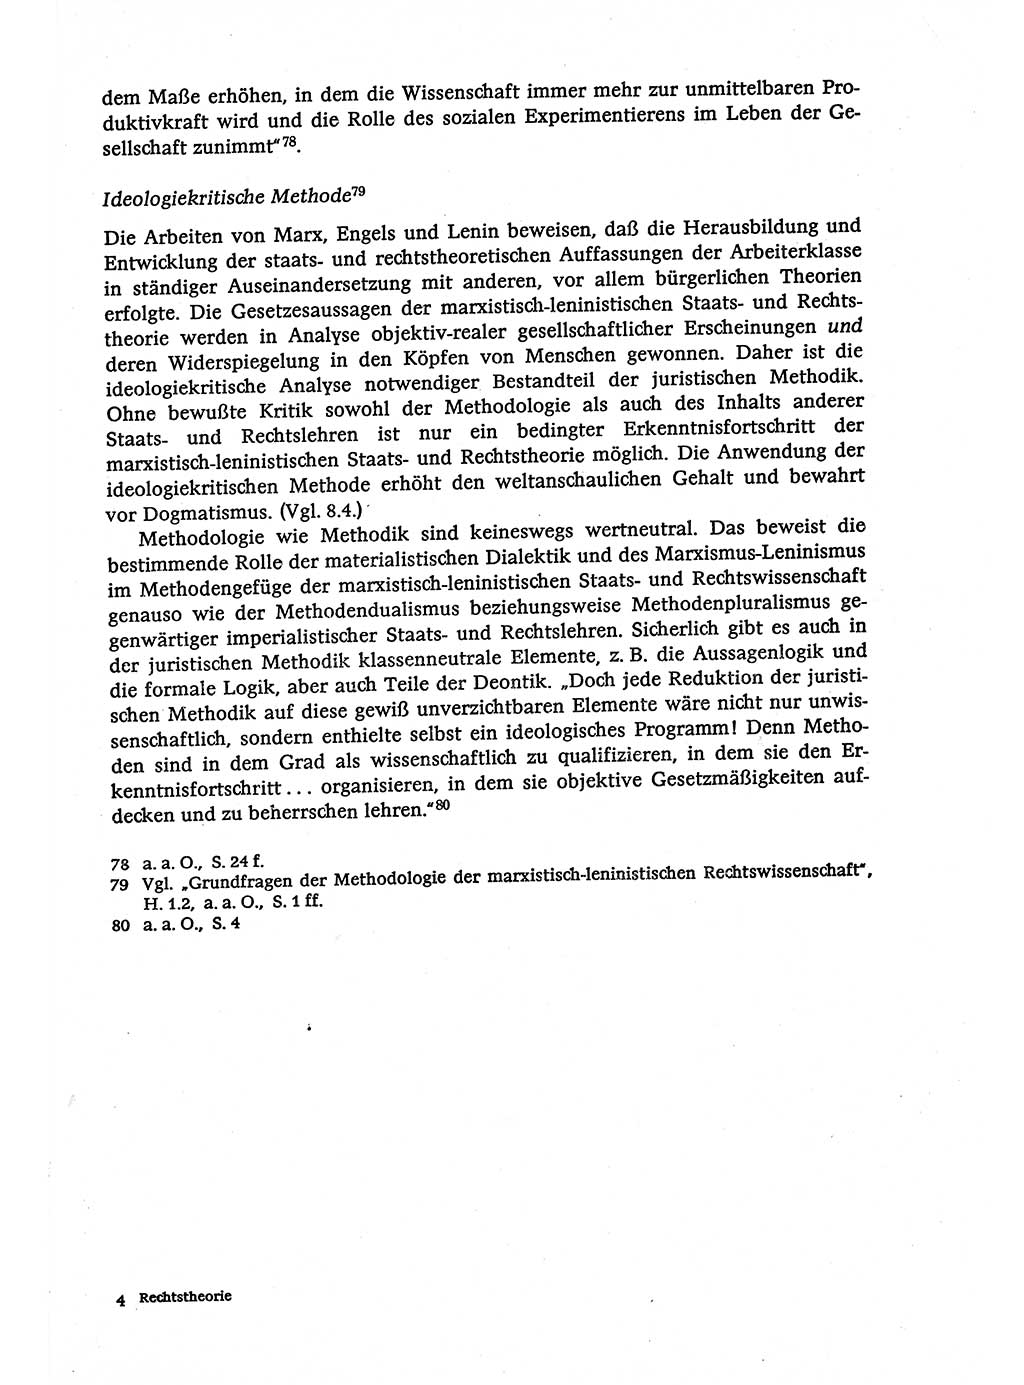 Marxistisch-leninistische (ML) Staats- und Rechtstheorie [Deutsche Demokratische Republik (DDR)], Lehrbuch 1980, Seite 49 (ML St.-R.-Th. DDR Lb. 1980, S. 49)